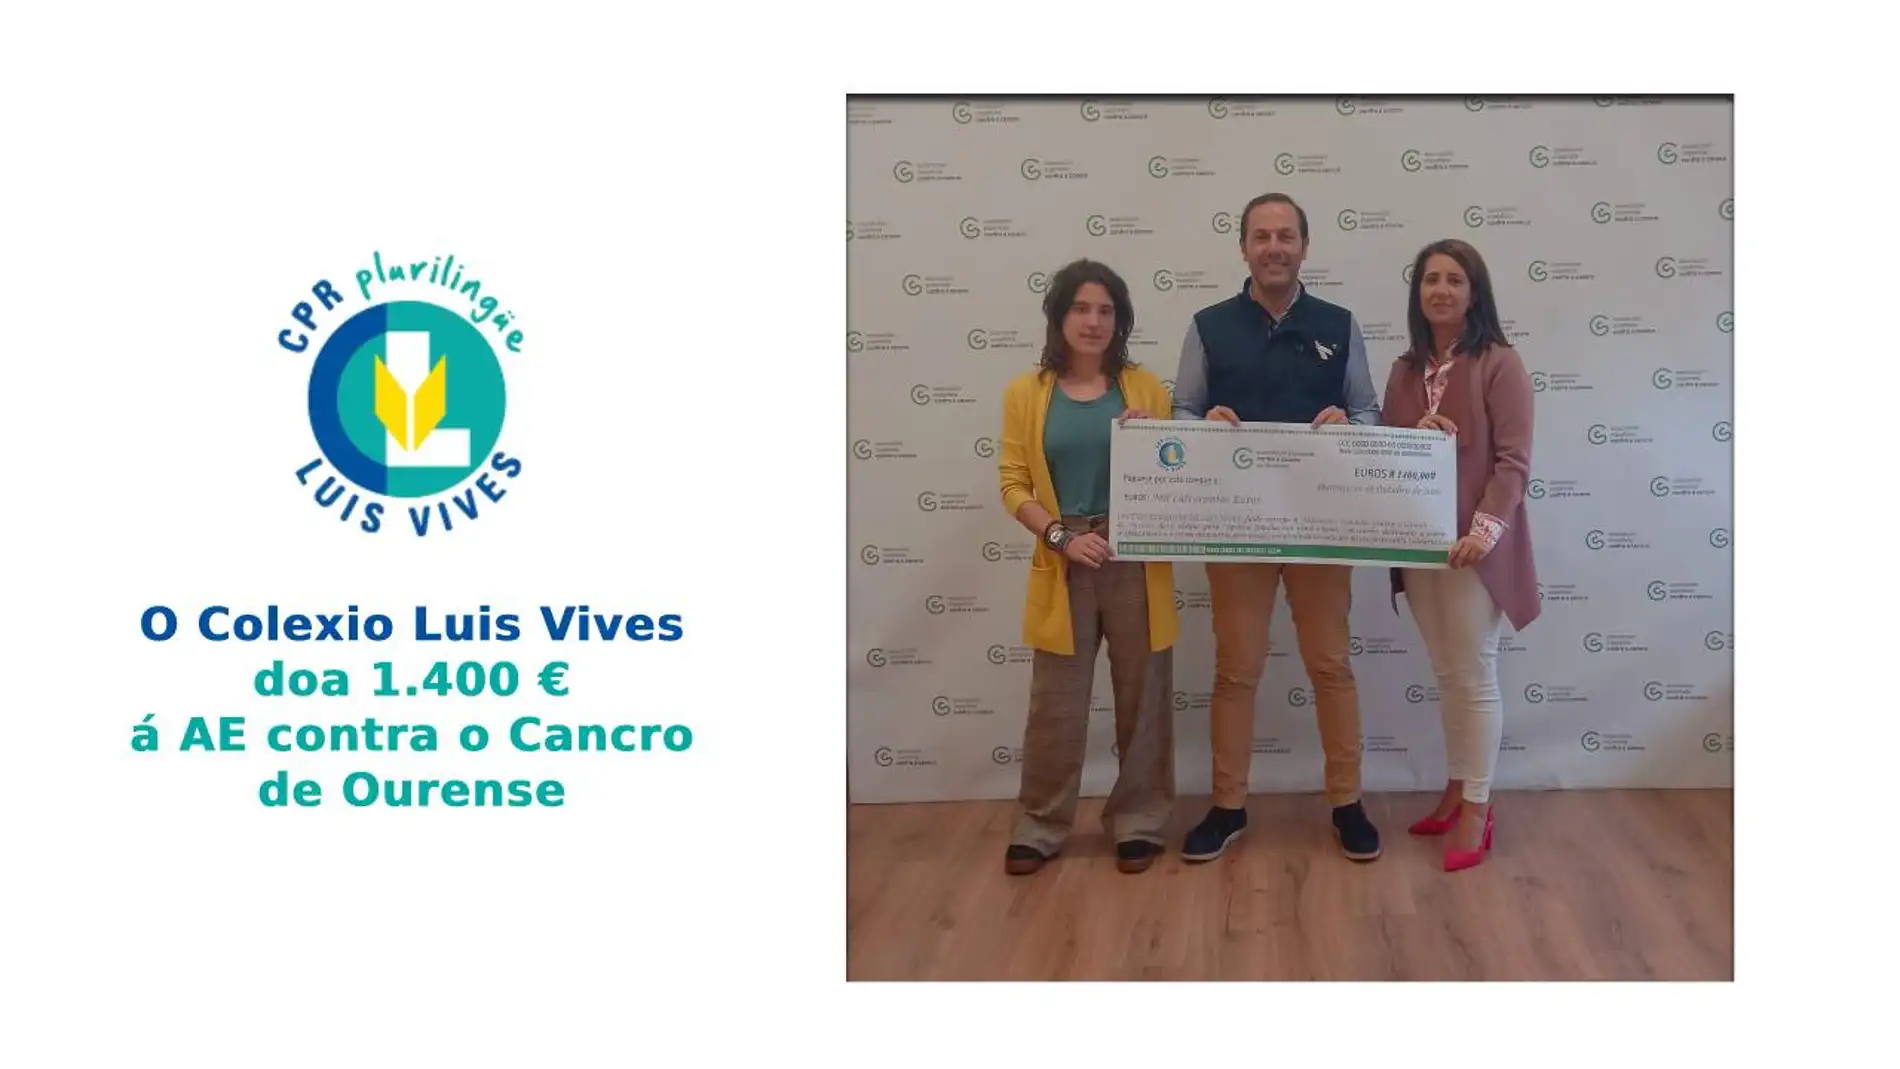 O Colexio Luis Vives doa 1.400 euros a AE contra o cancro